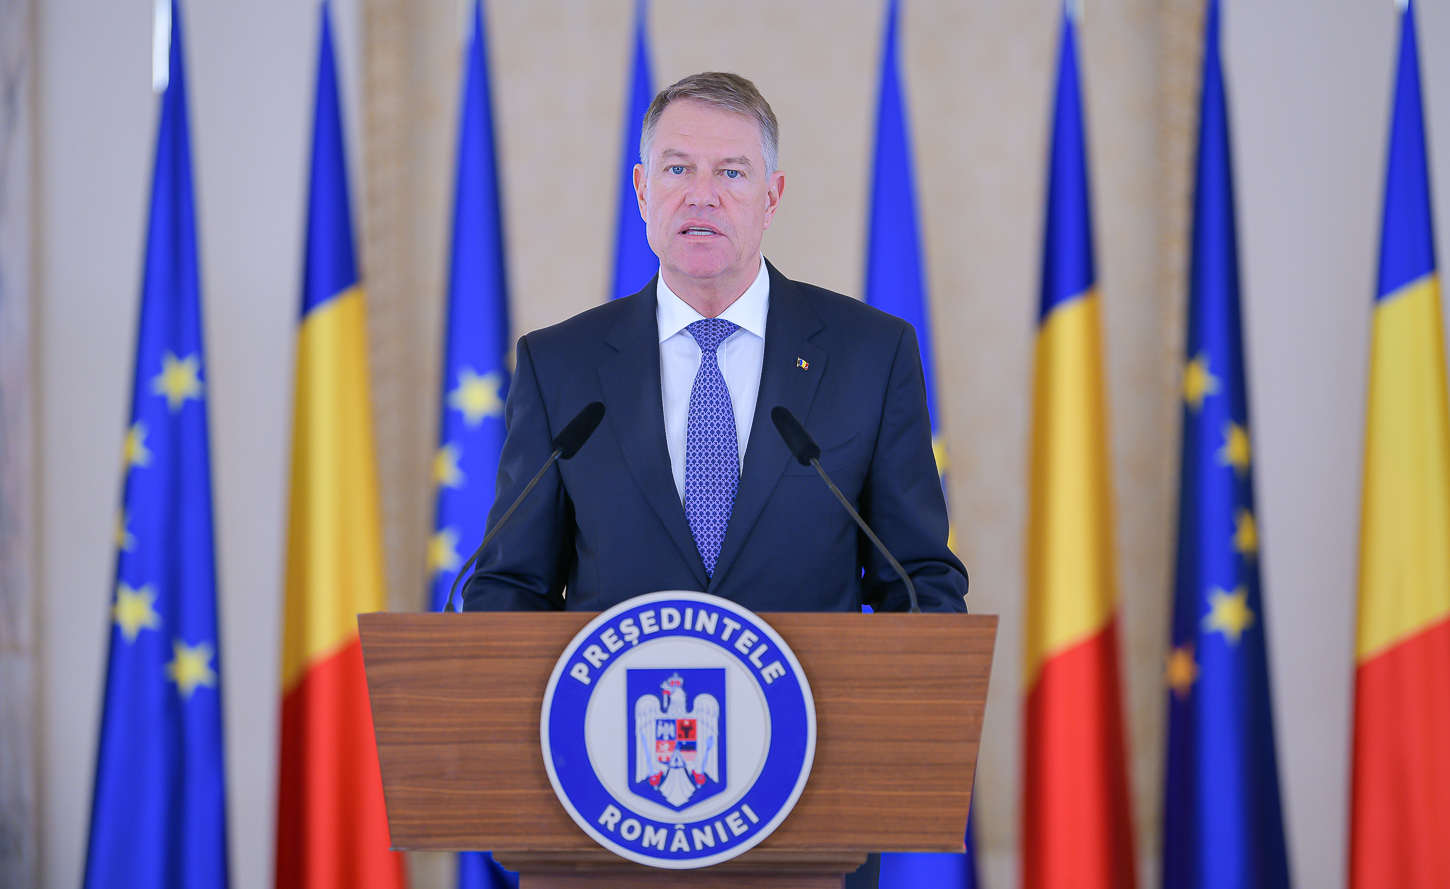 Iohannis: Salut anunţul cancelarului german privind aderarea României la Schengen; obiectiv strategic al ţării noastre